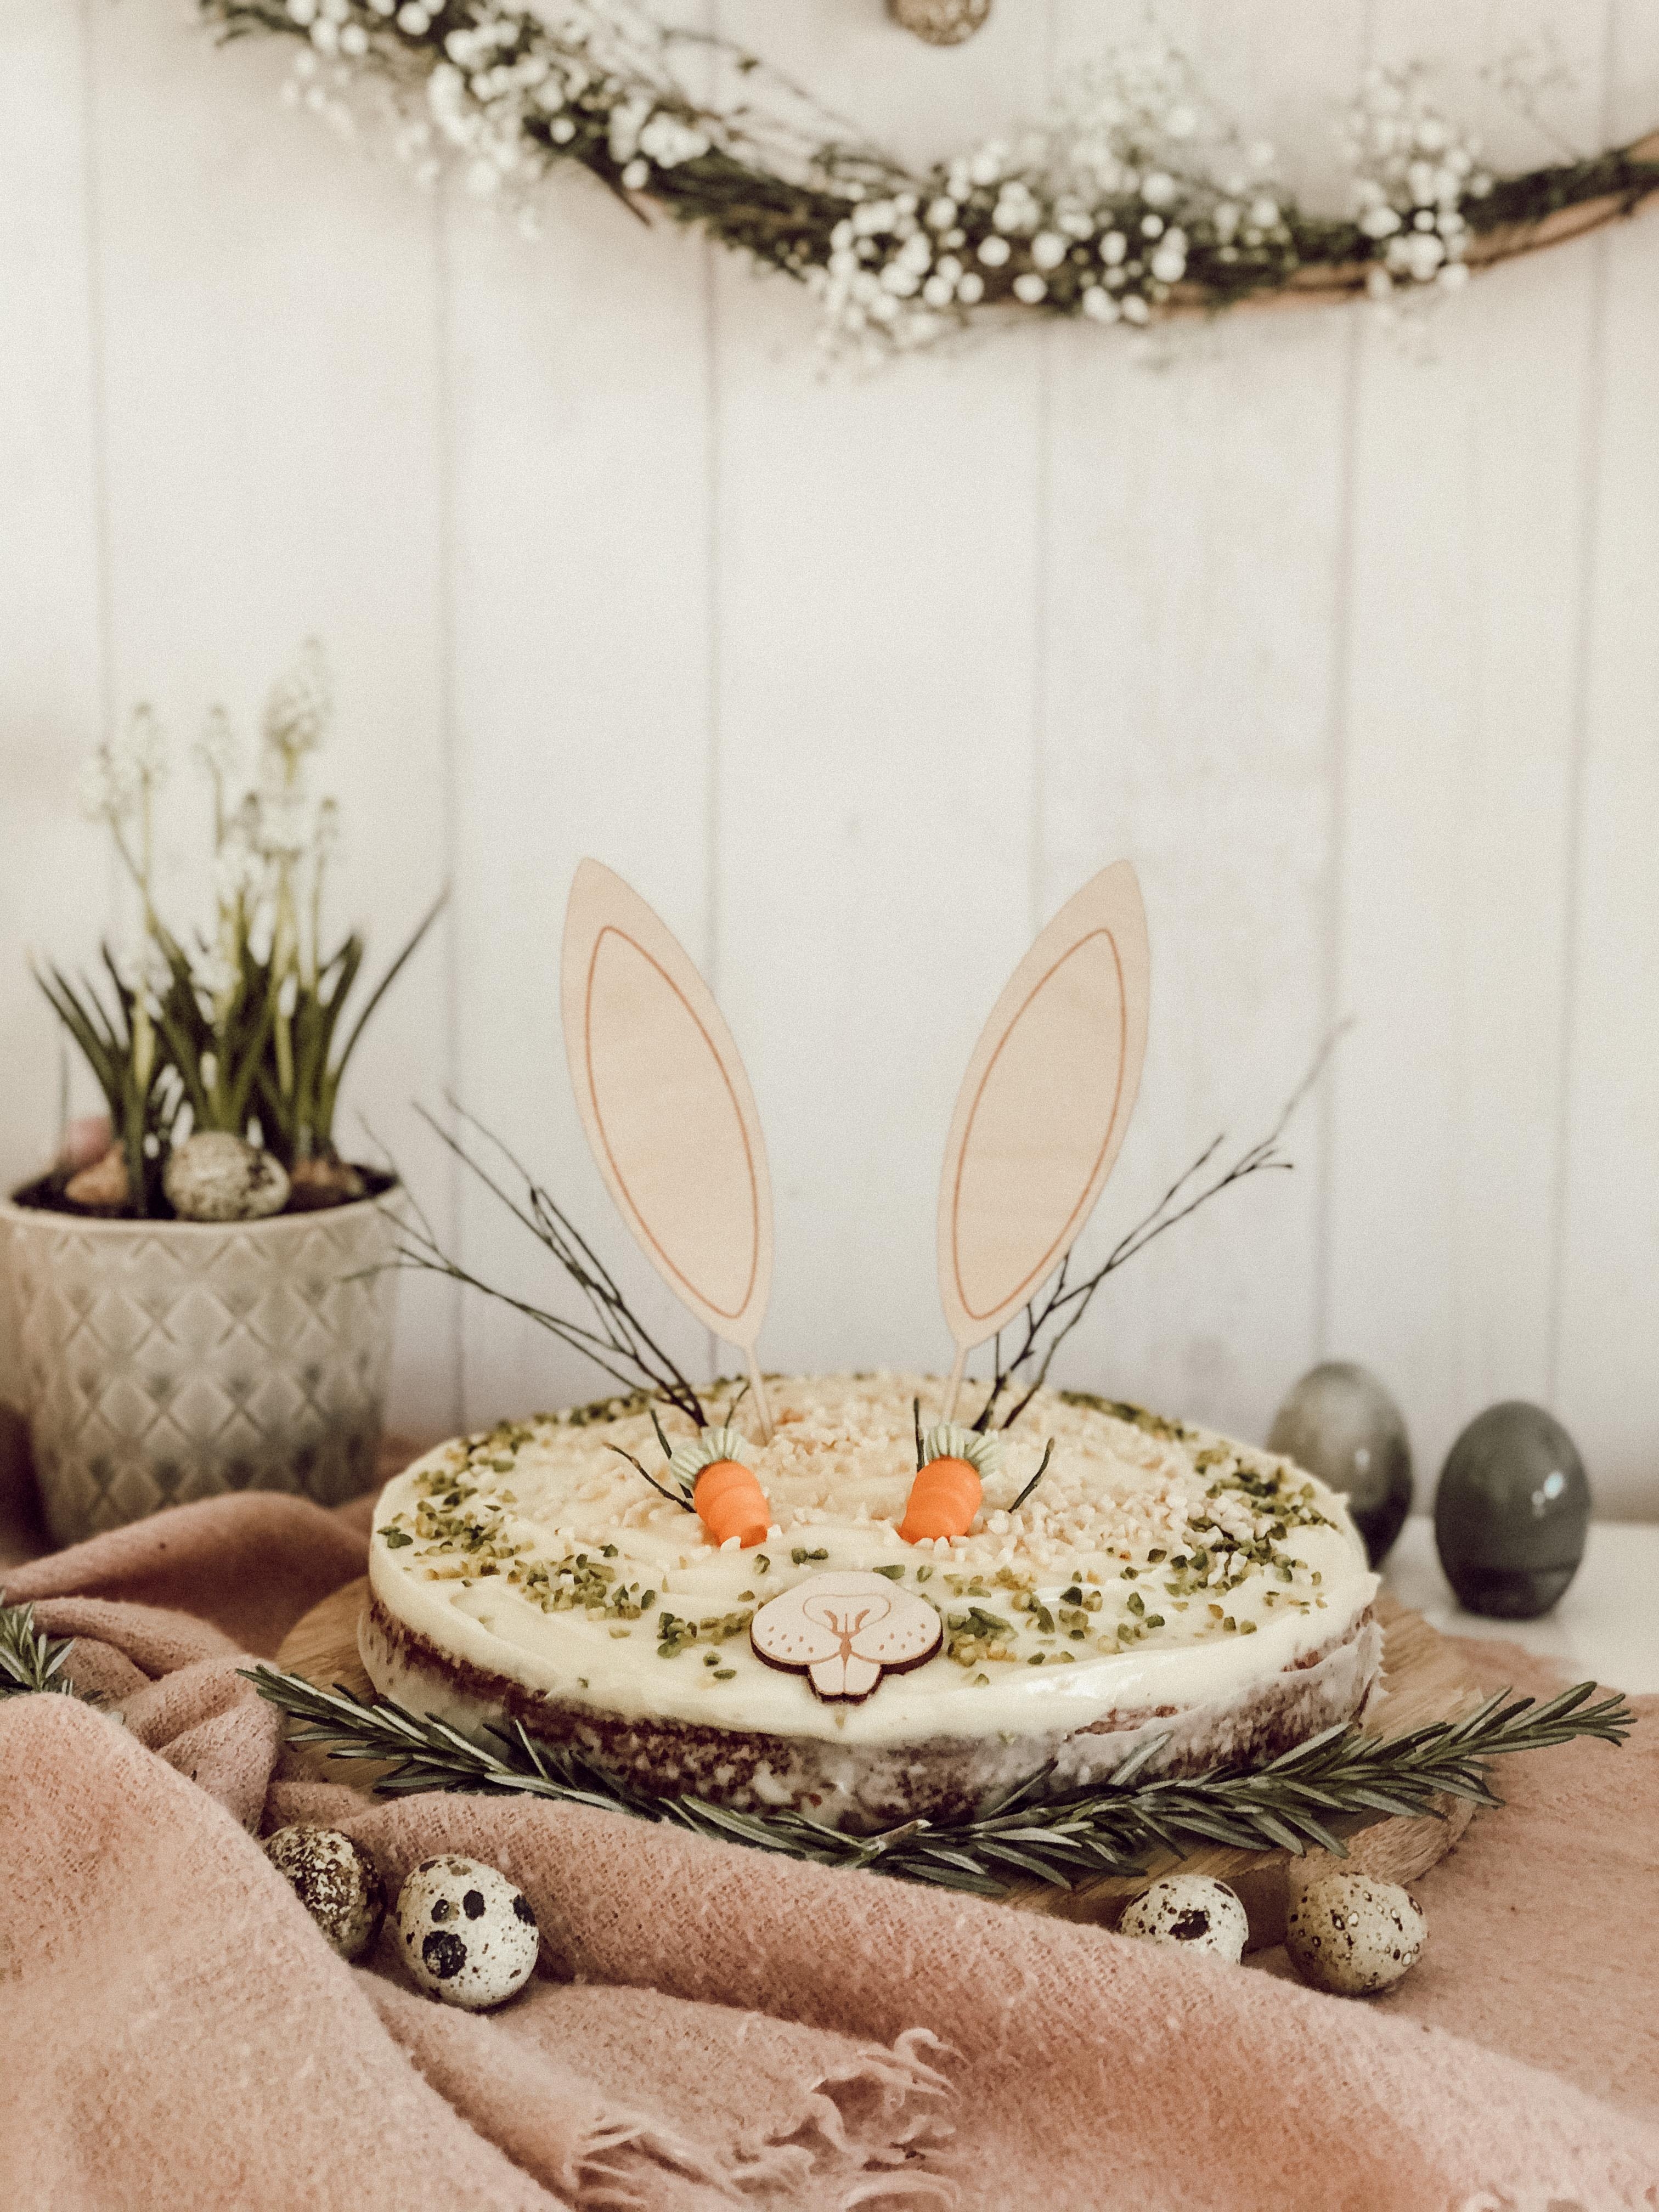 Kuchen für die Seele 🌿!
Lasst es Euch gut gehen ! #happysunday #osteridee #osterdeko #kuchenliebe